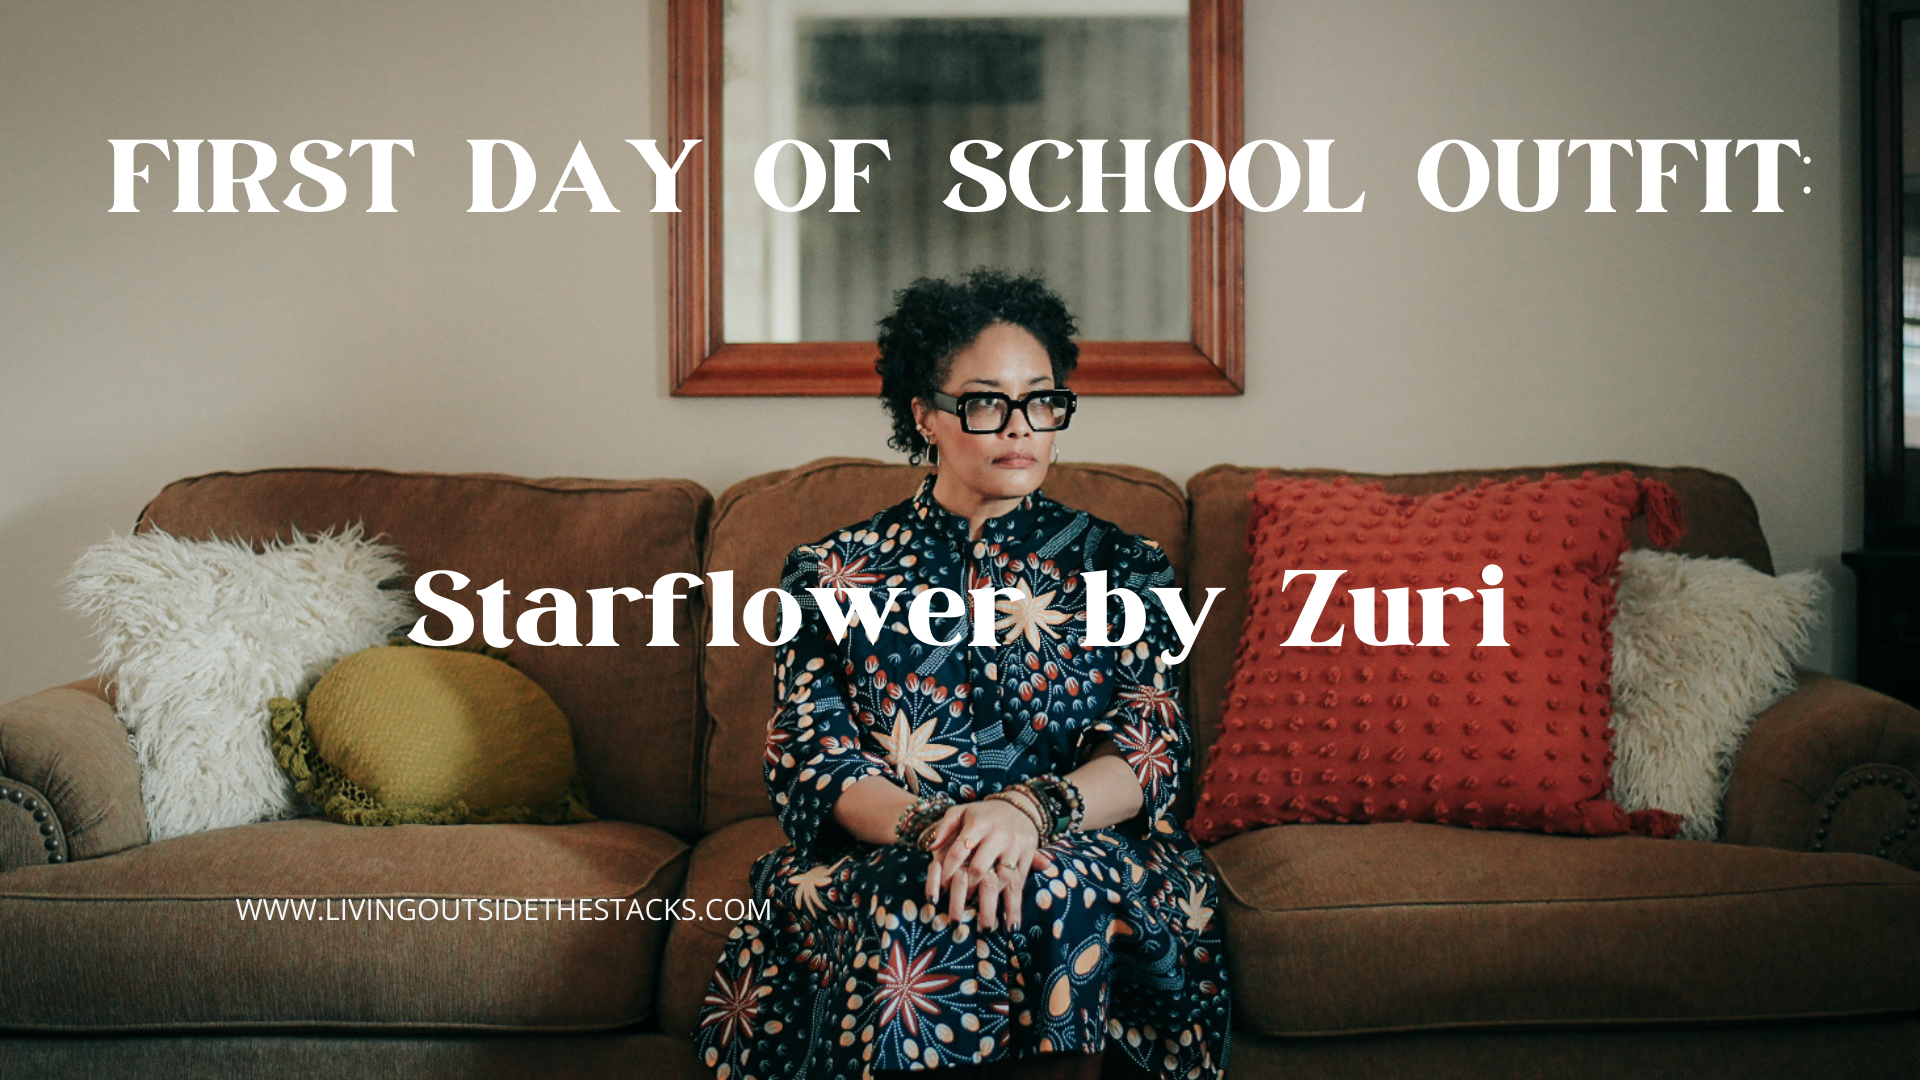 Starflower by Zuri Twitter 2 {living outside the stacks} Follow @DaenelT on Instagram